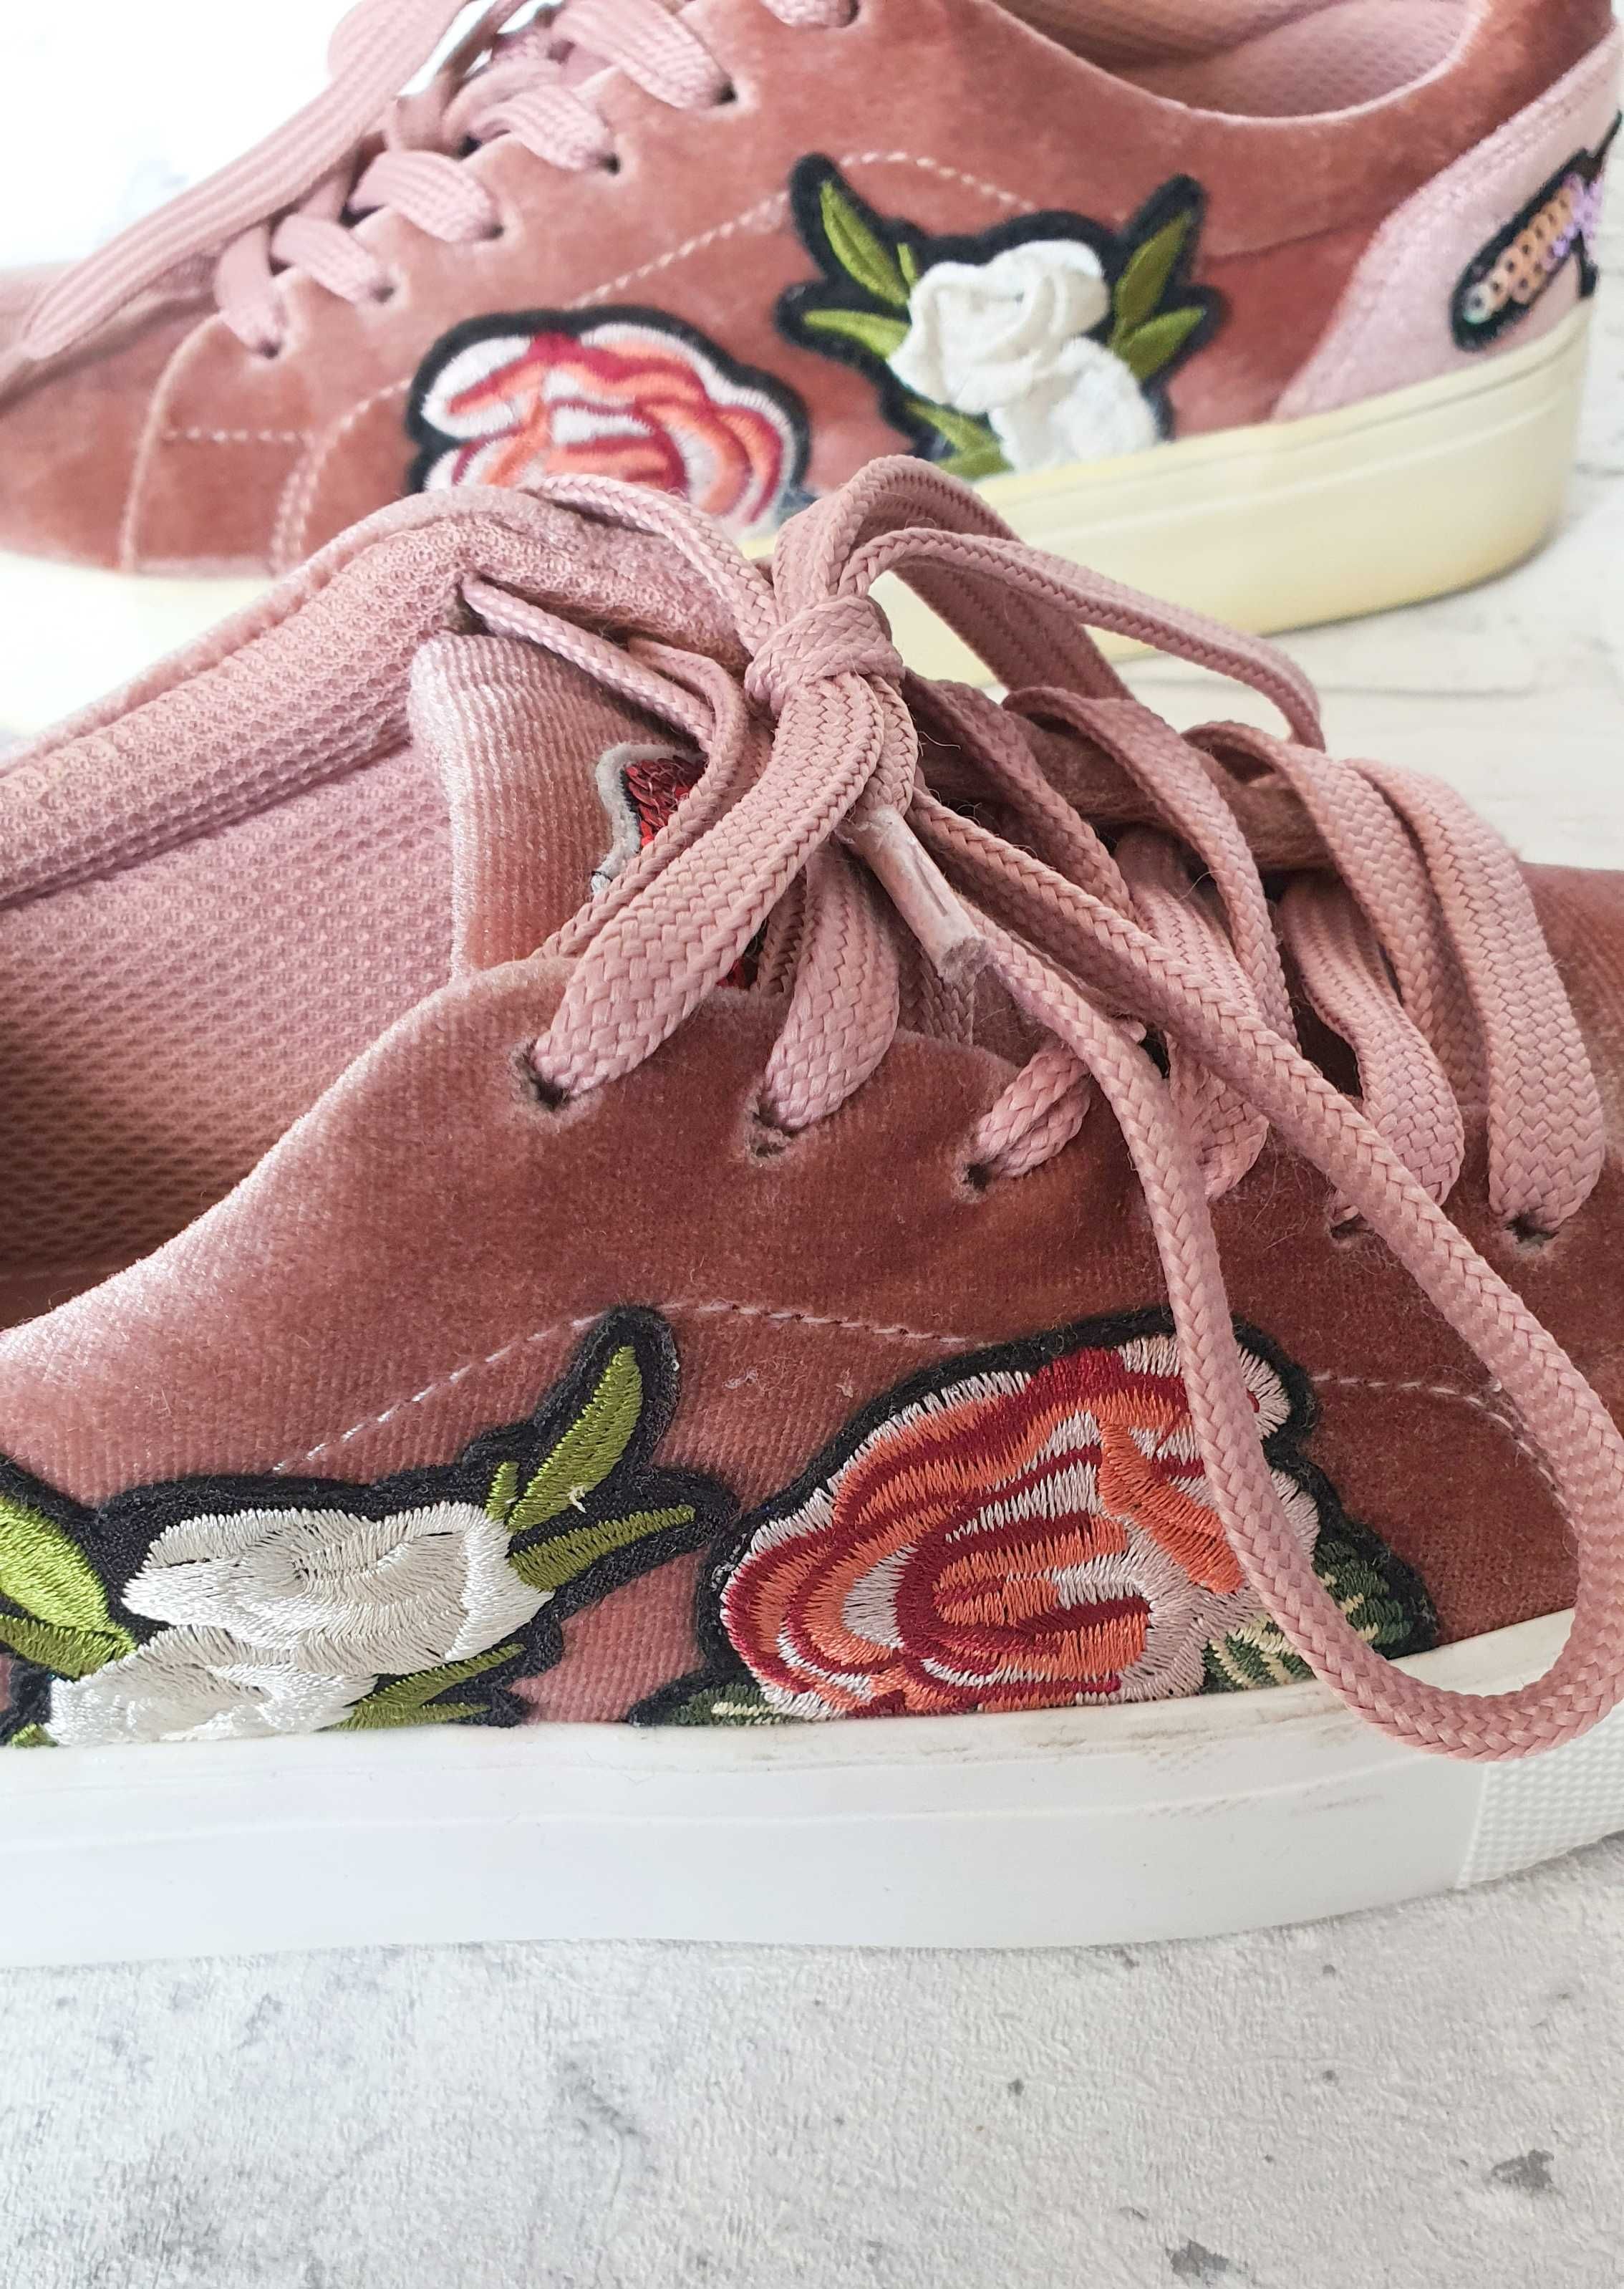 Buty sportowe sneakersy 36 różowe pudrowy róż zamszowe Madden Girl